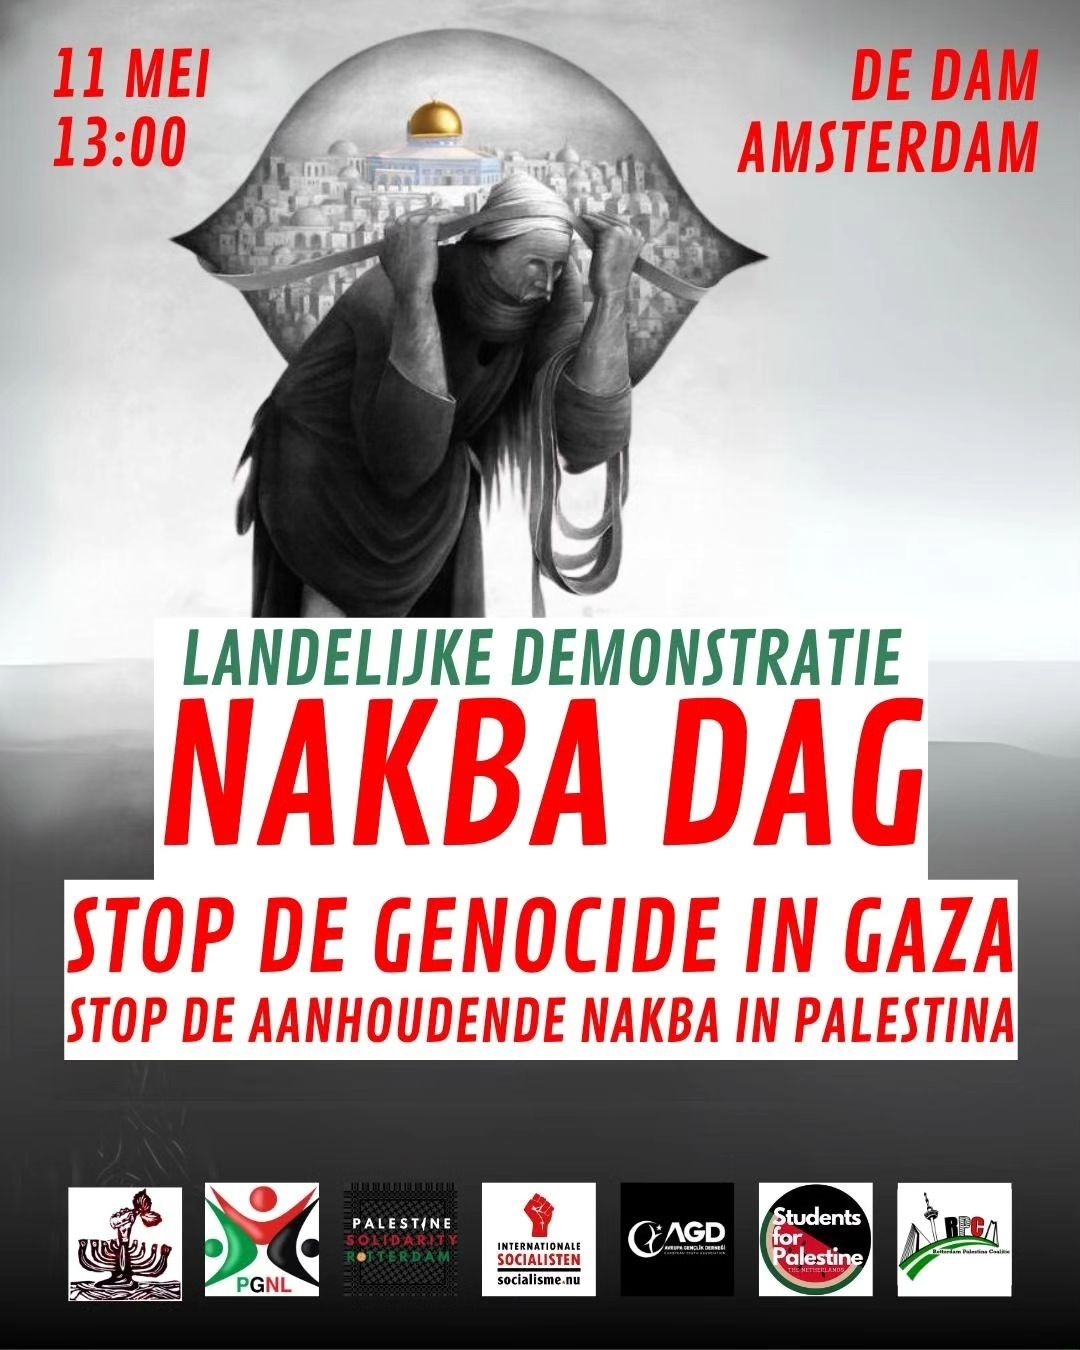 11 mei 13:00 - De Dam Amsterdam

LANDELIJKE DEMONSTRATIE
NAKBA DAG
STOP DE GENOCIDE IN GAZA
STOP DE AANHOUDENDE NAKBA IN PALESTINA

[logo's van de organisatoren]